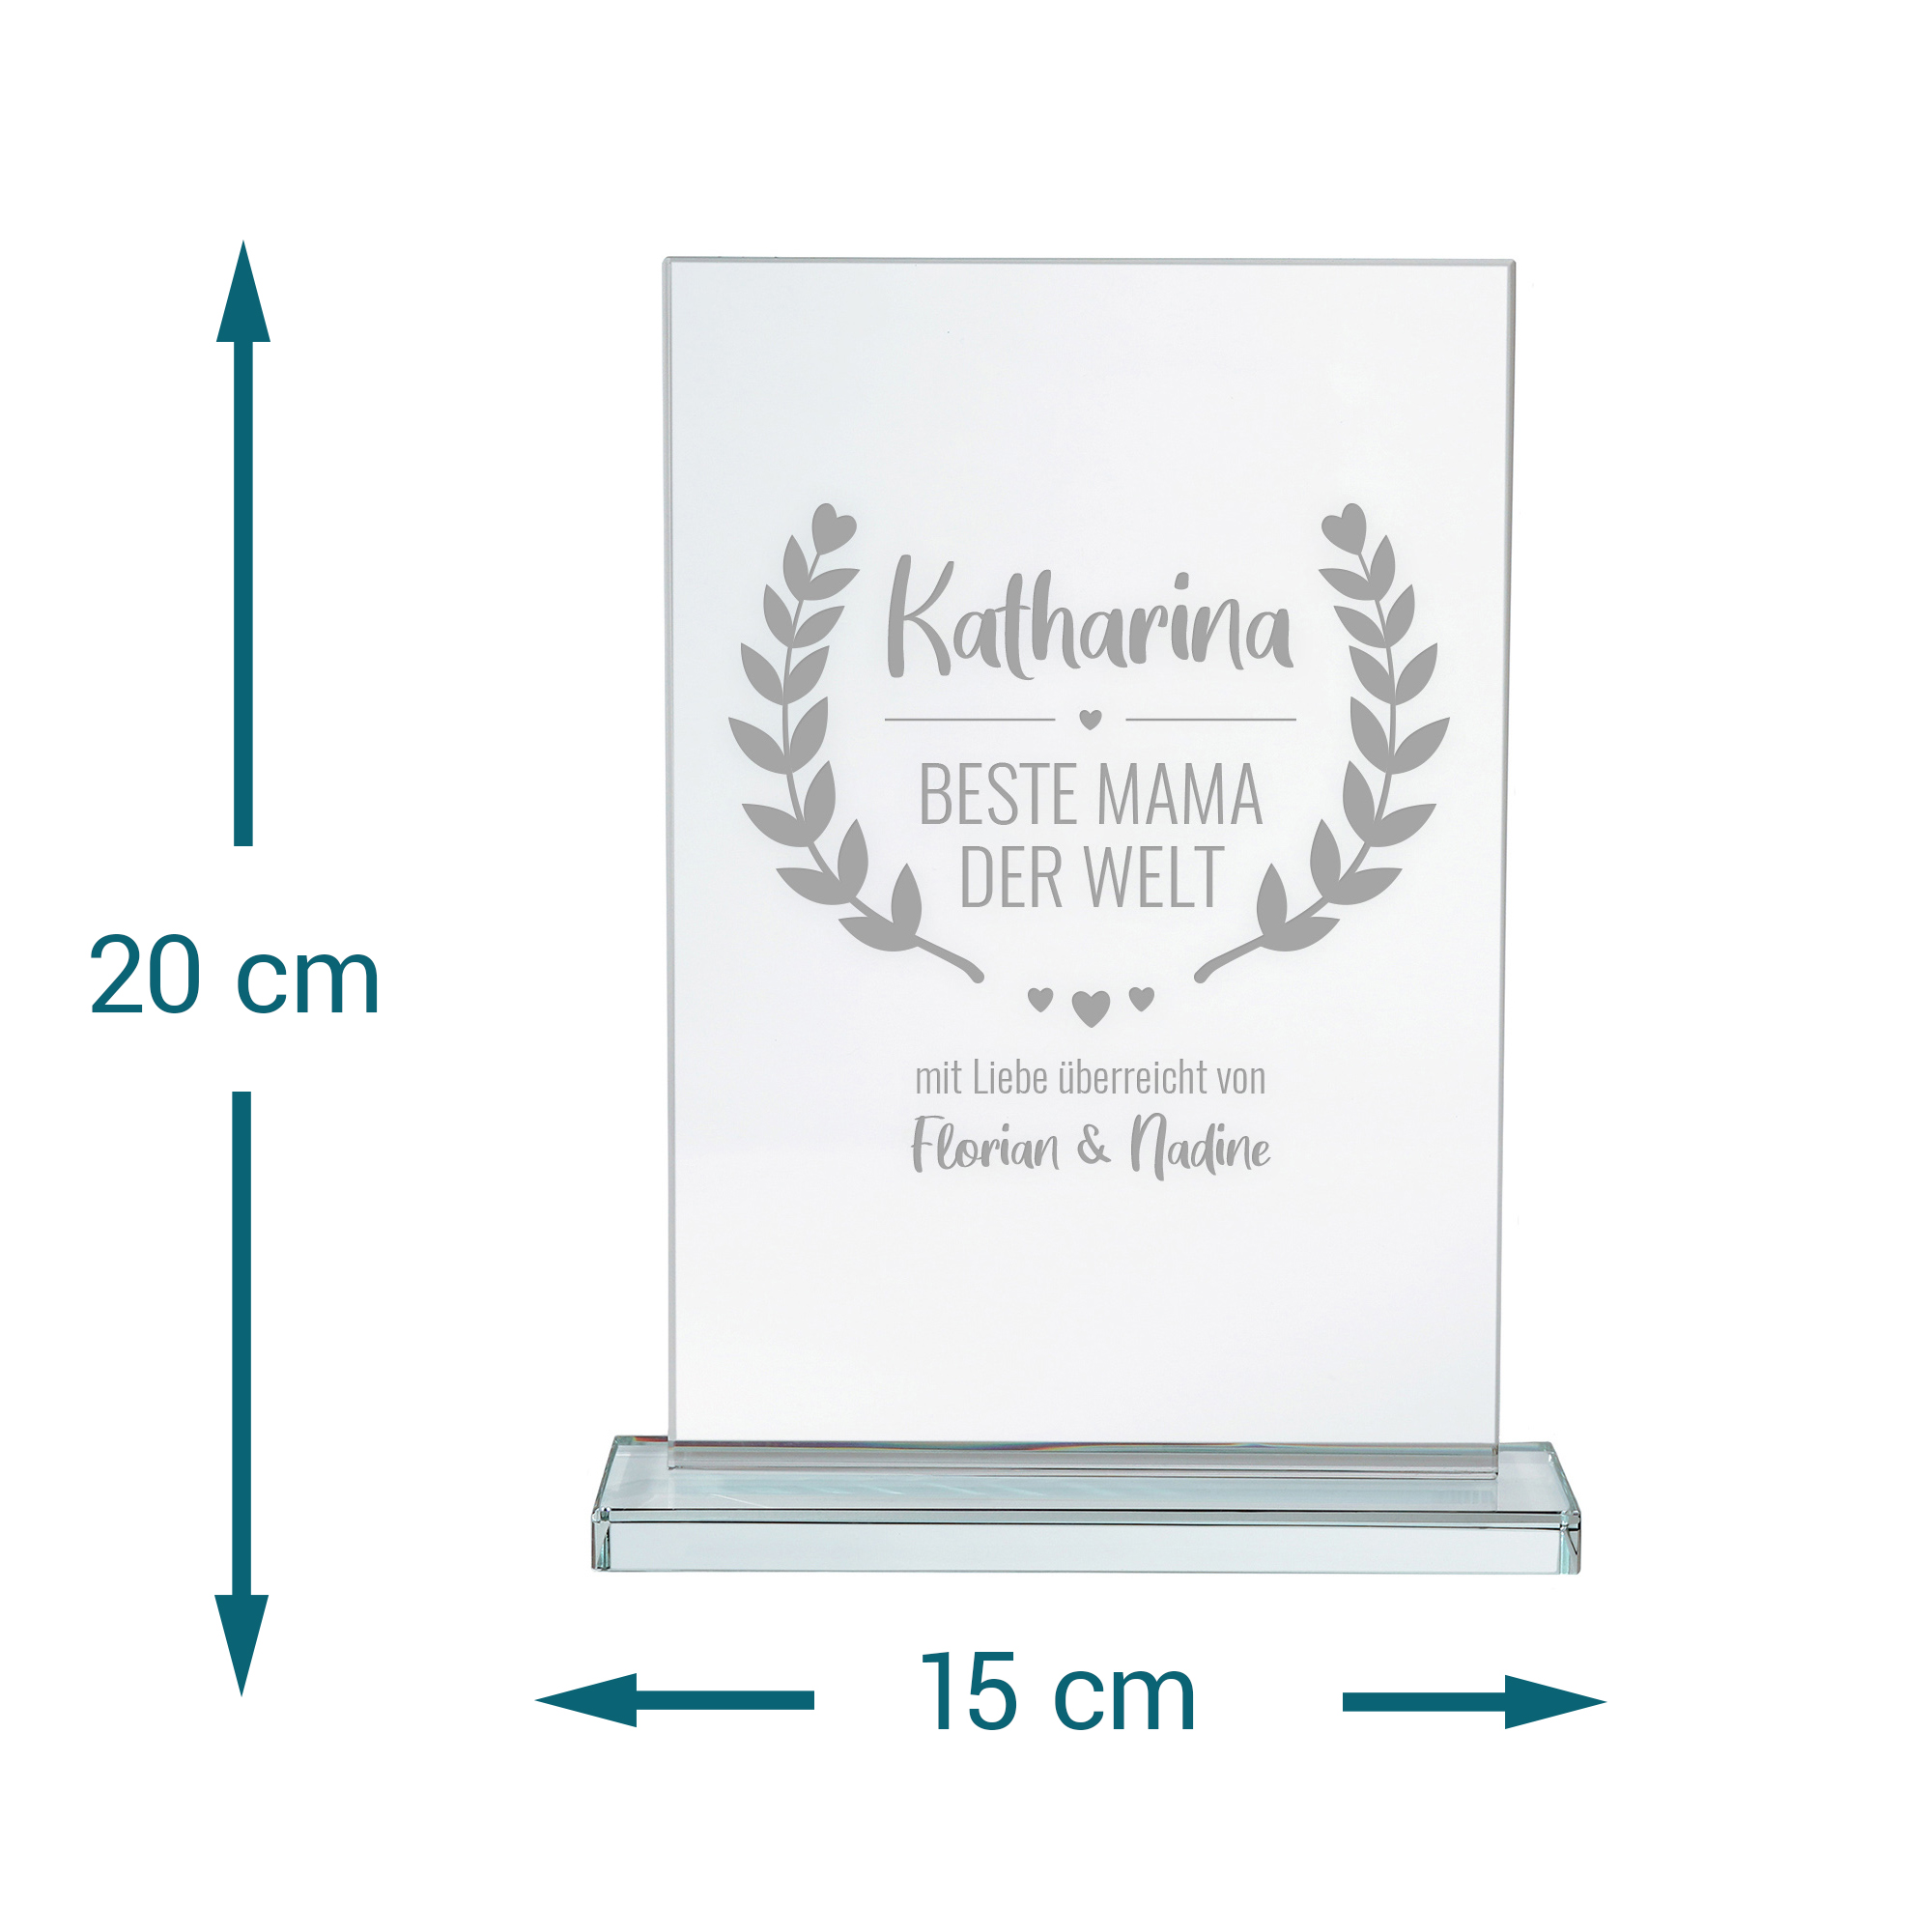 Personalisierter Glaspokal - Auszeichnung für Beste Mama 2162-167-MZ - 6